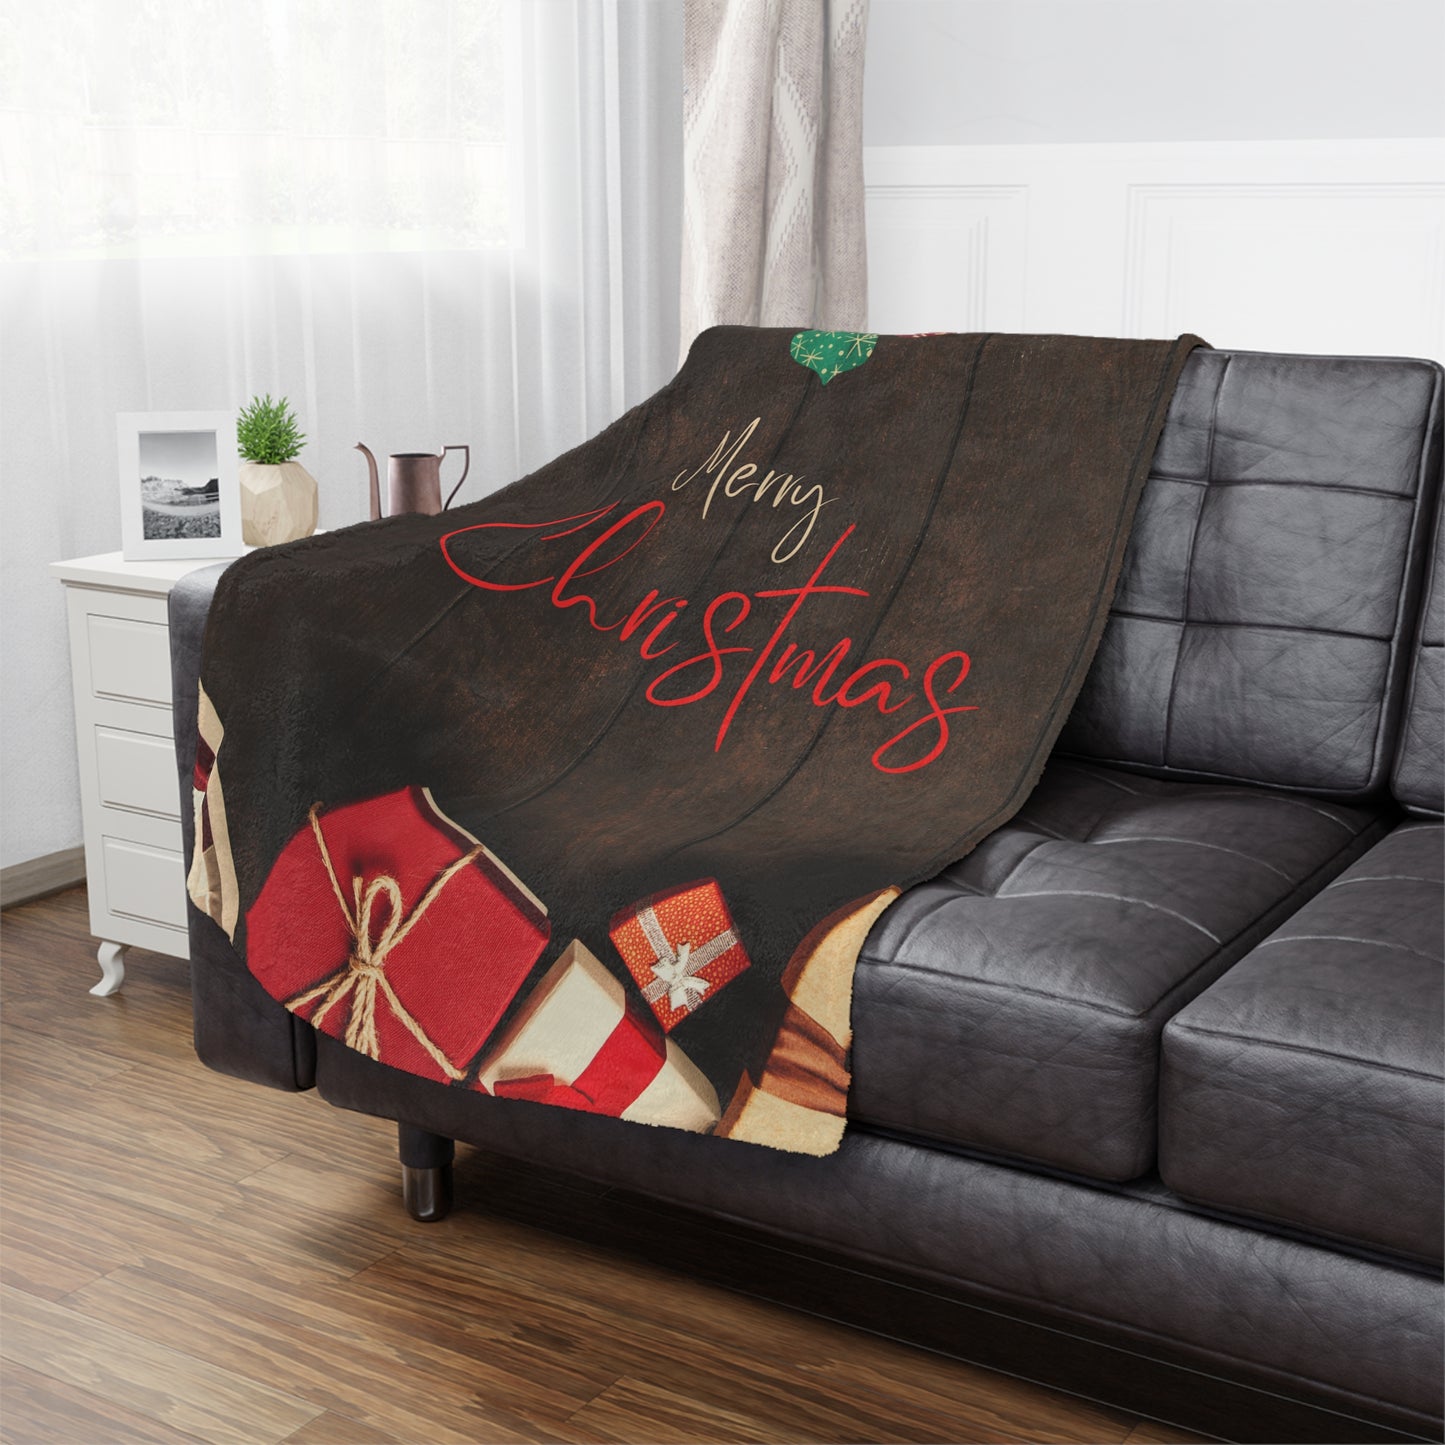 Merry Christmas Printed Minky Blanket, Coffee